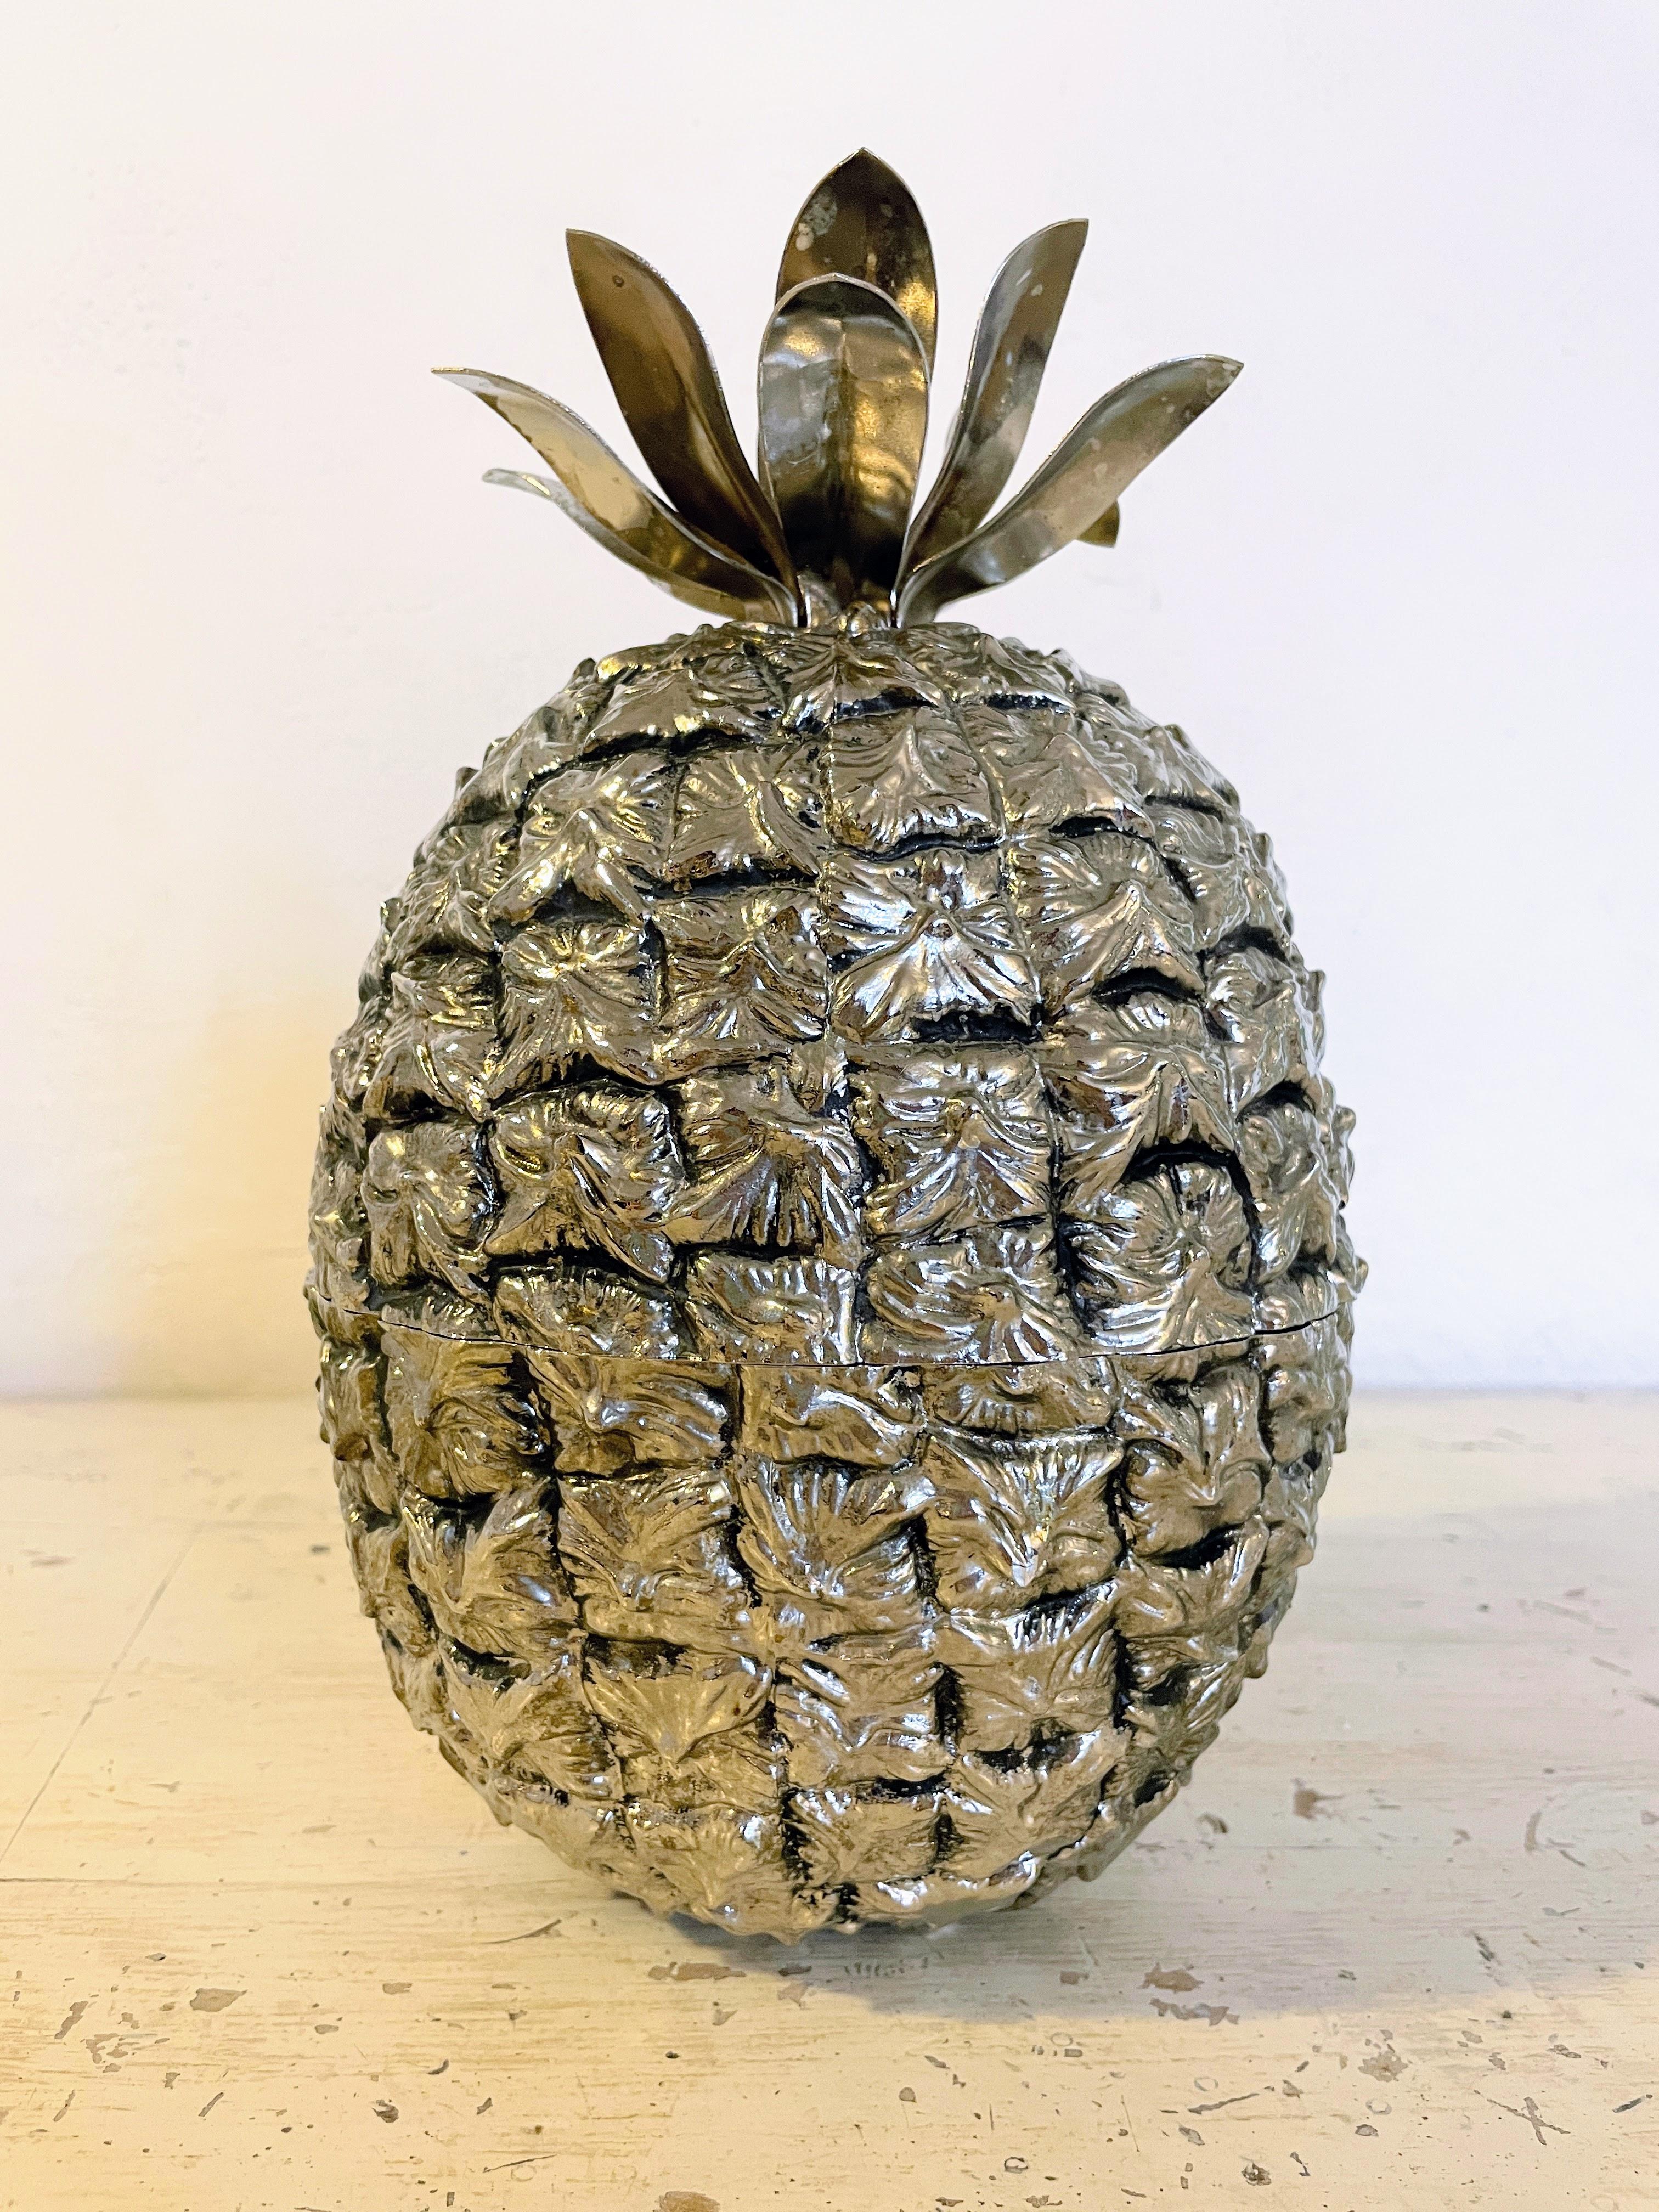 Voici le seau à glace Freddo Therm Silver Pineapple, une incarnation discrète de la sophistication raffinée de la Suisse des années 1970. Cette pièce exclusive, fabriquée avec précision par Freddo Therm, allie harmonieusement fonctionnalité et